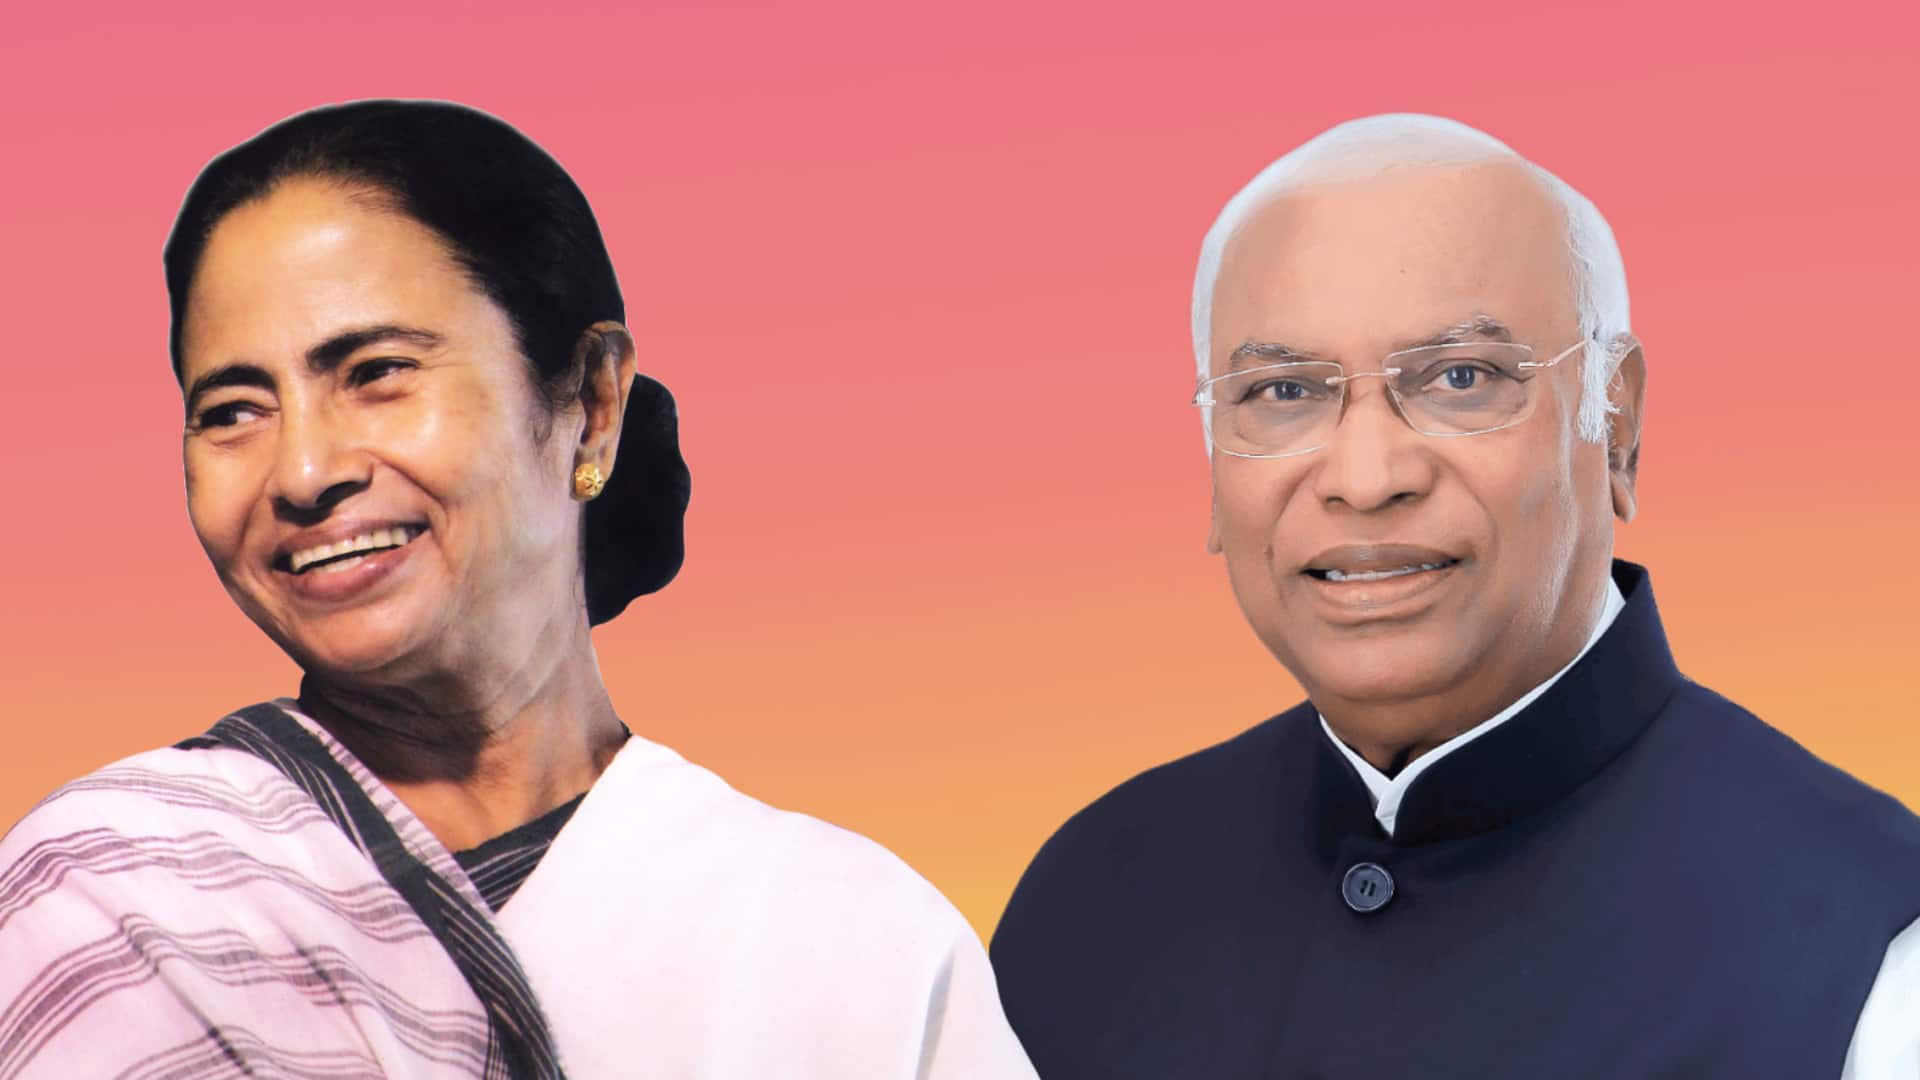 पश्चिम बंगाल: तृणमूल अकेले चुनाव लड़ने की इच्छुक, कांग्रेस बोली- गठबंधन के लिए बातचीत जारी